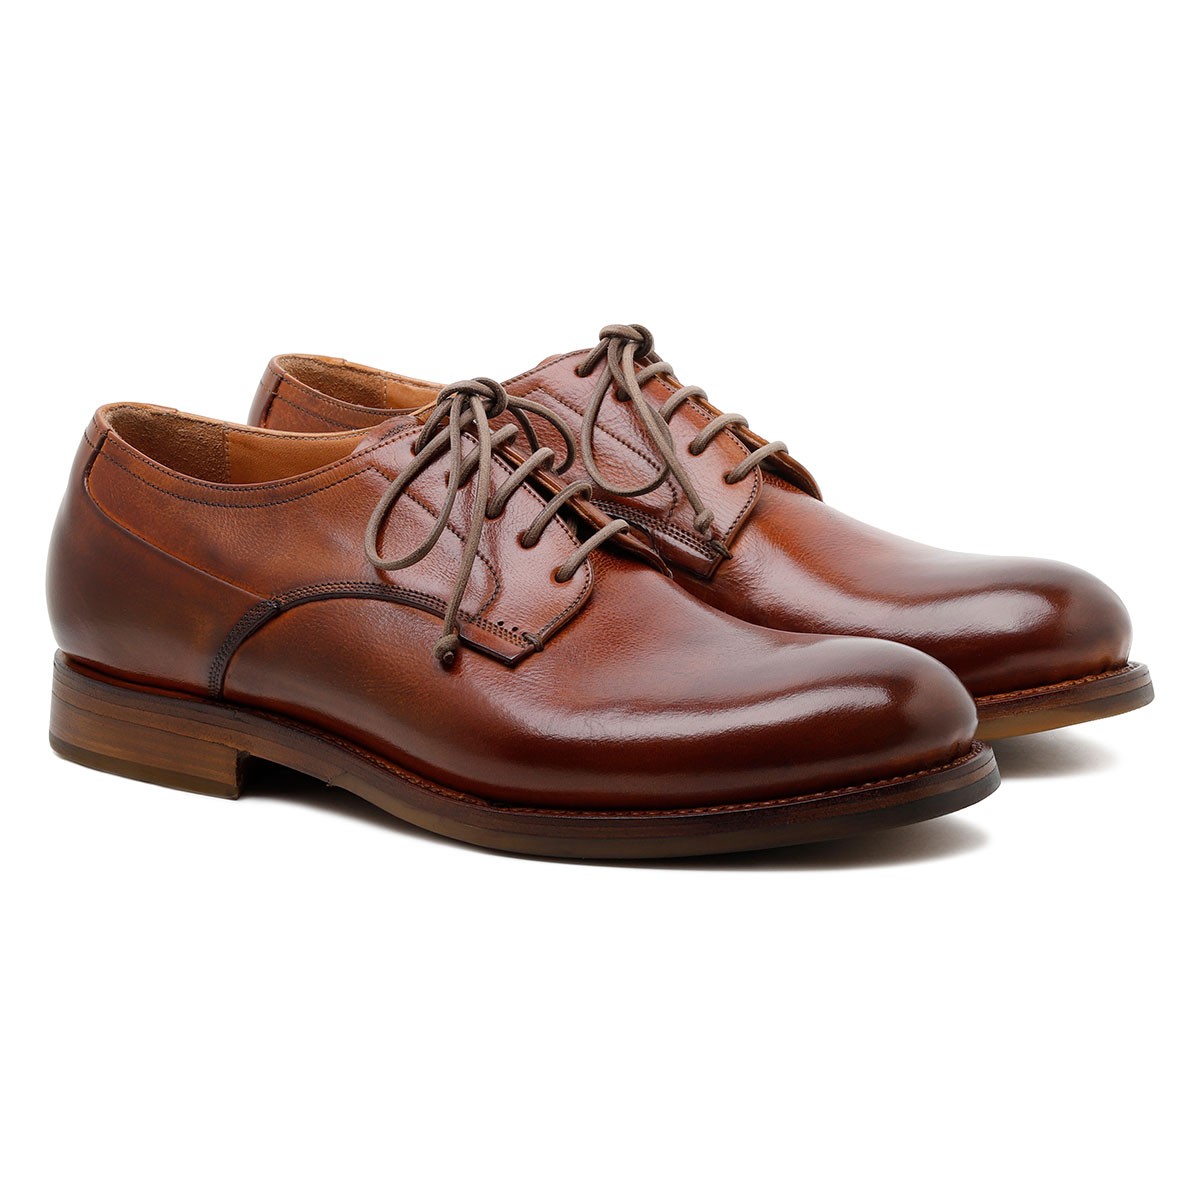 Zurigo brown leather Derby shoes